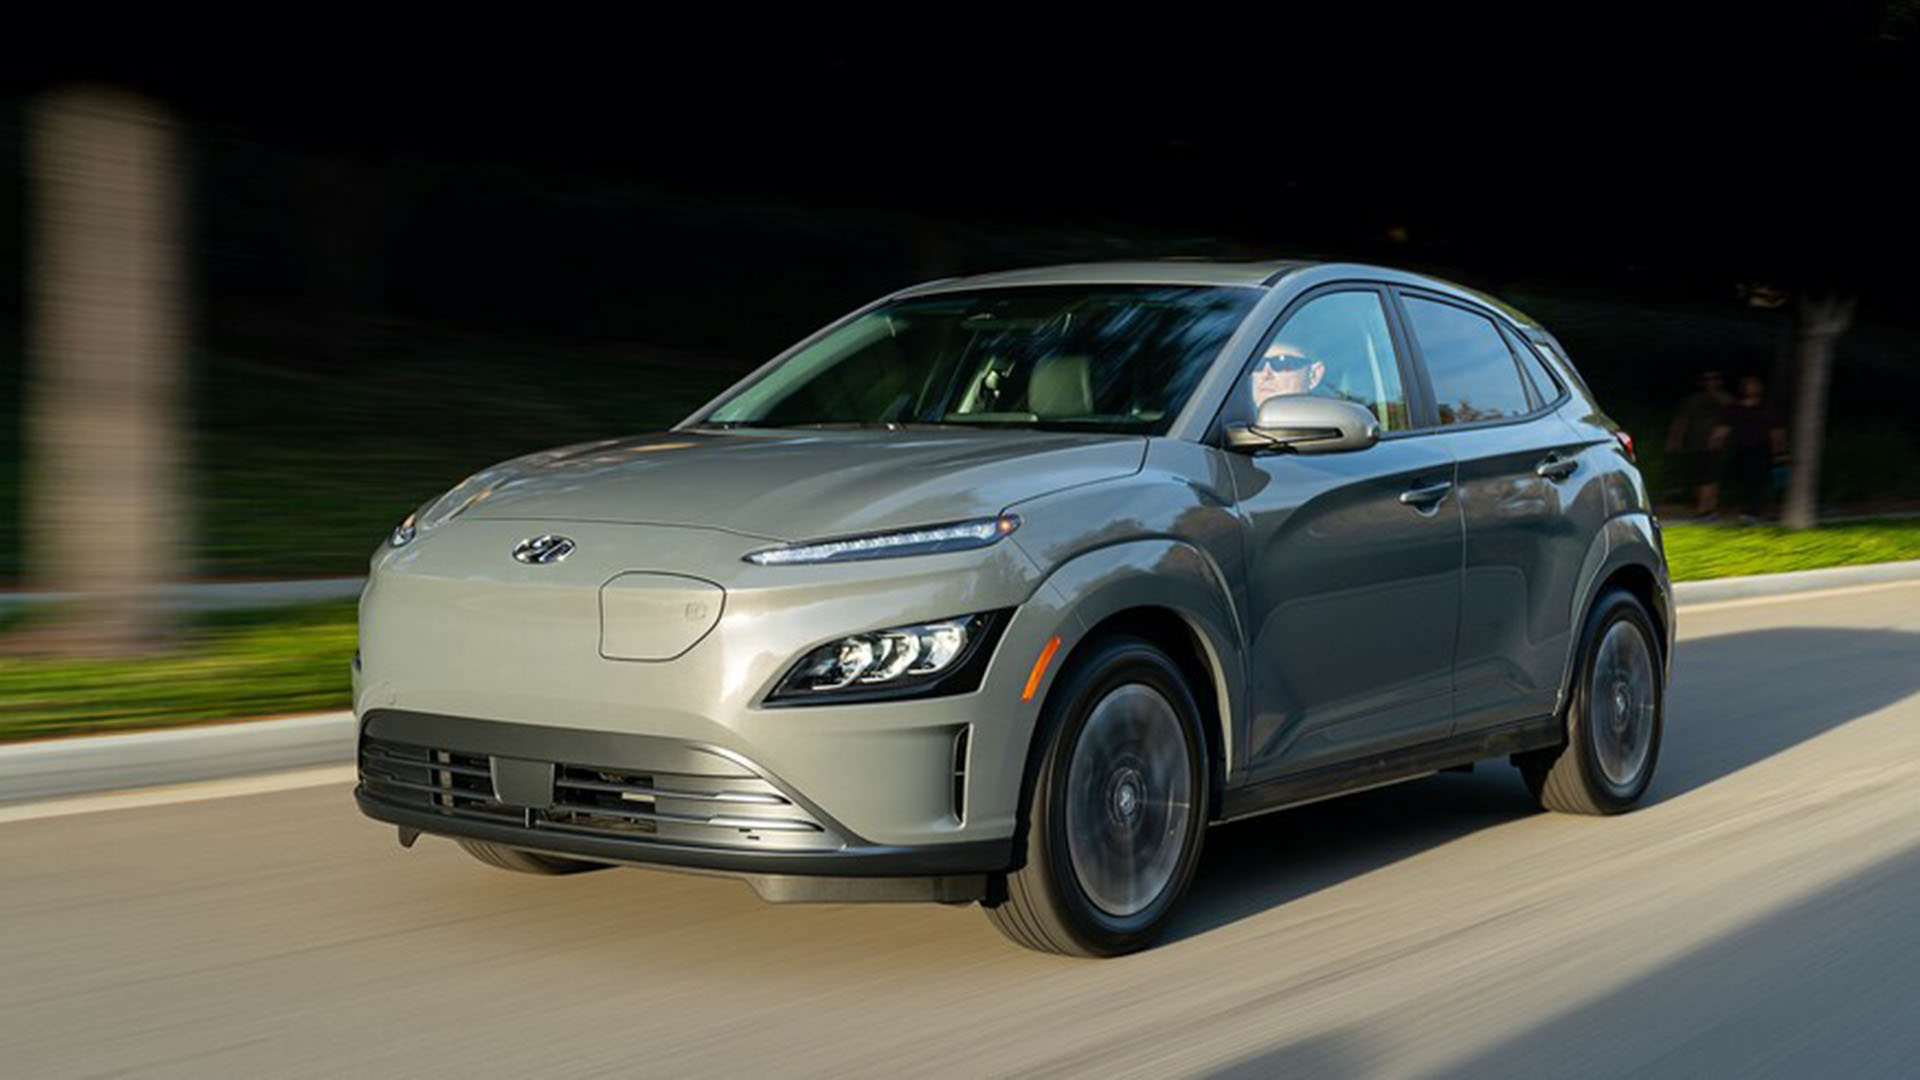 نمای سه چهارم خودروی برقی هیوندای کنا الکتریک / 2022 Hyundai Kona Electric خاکستری رنگ